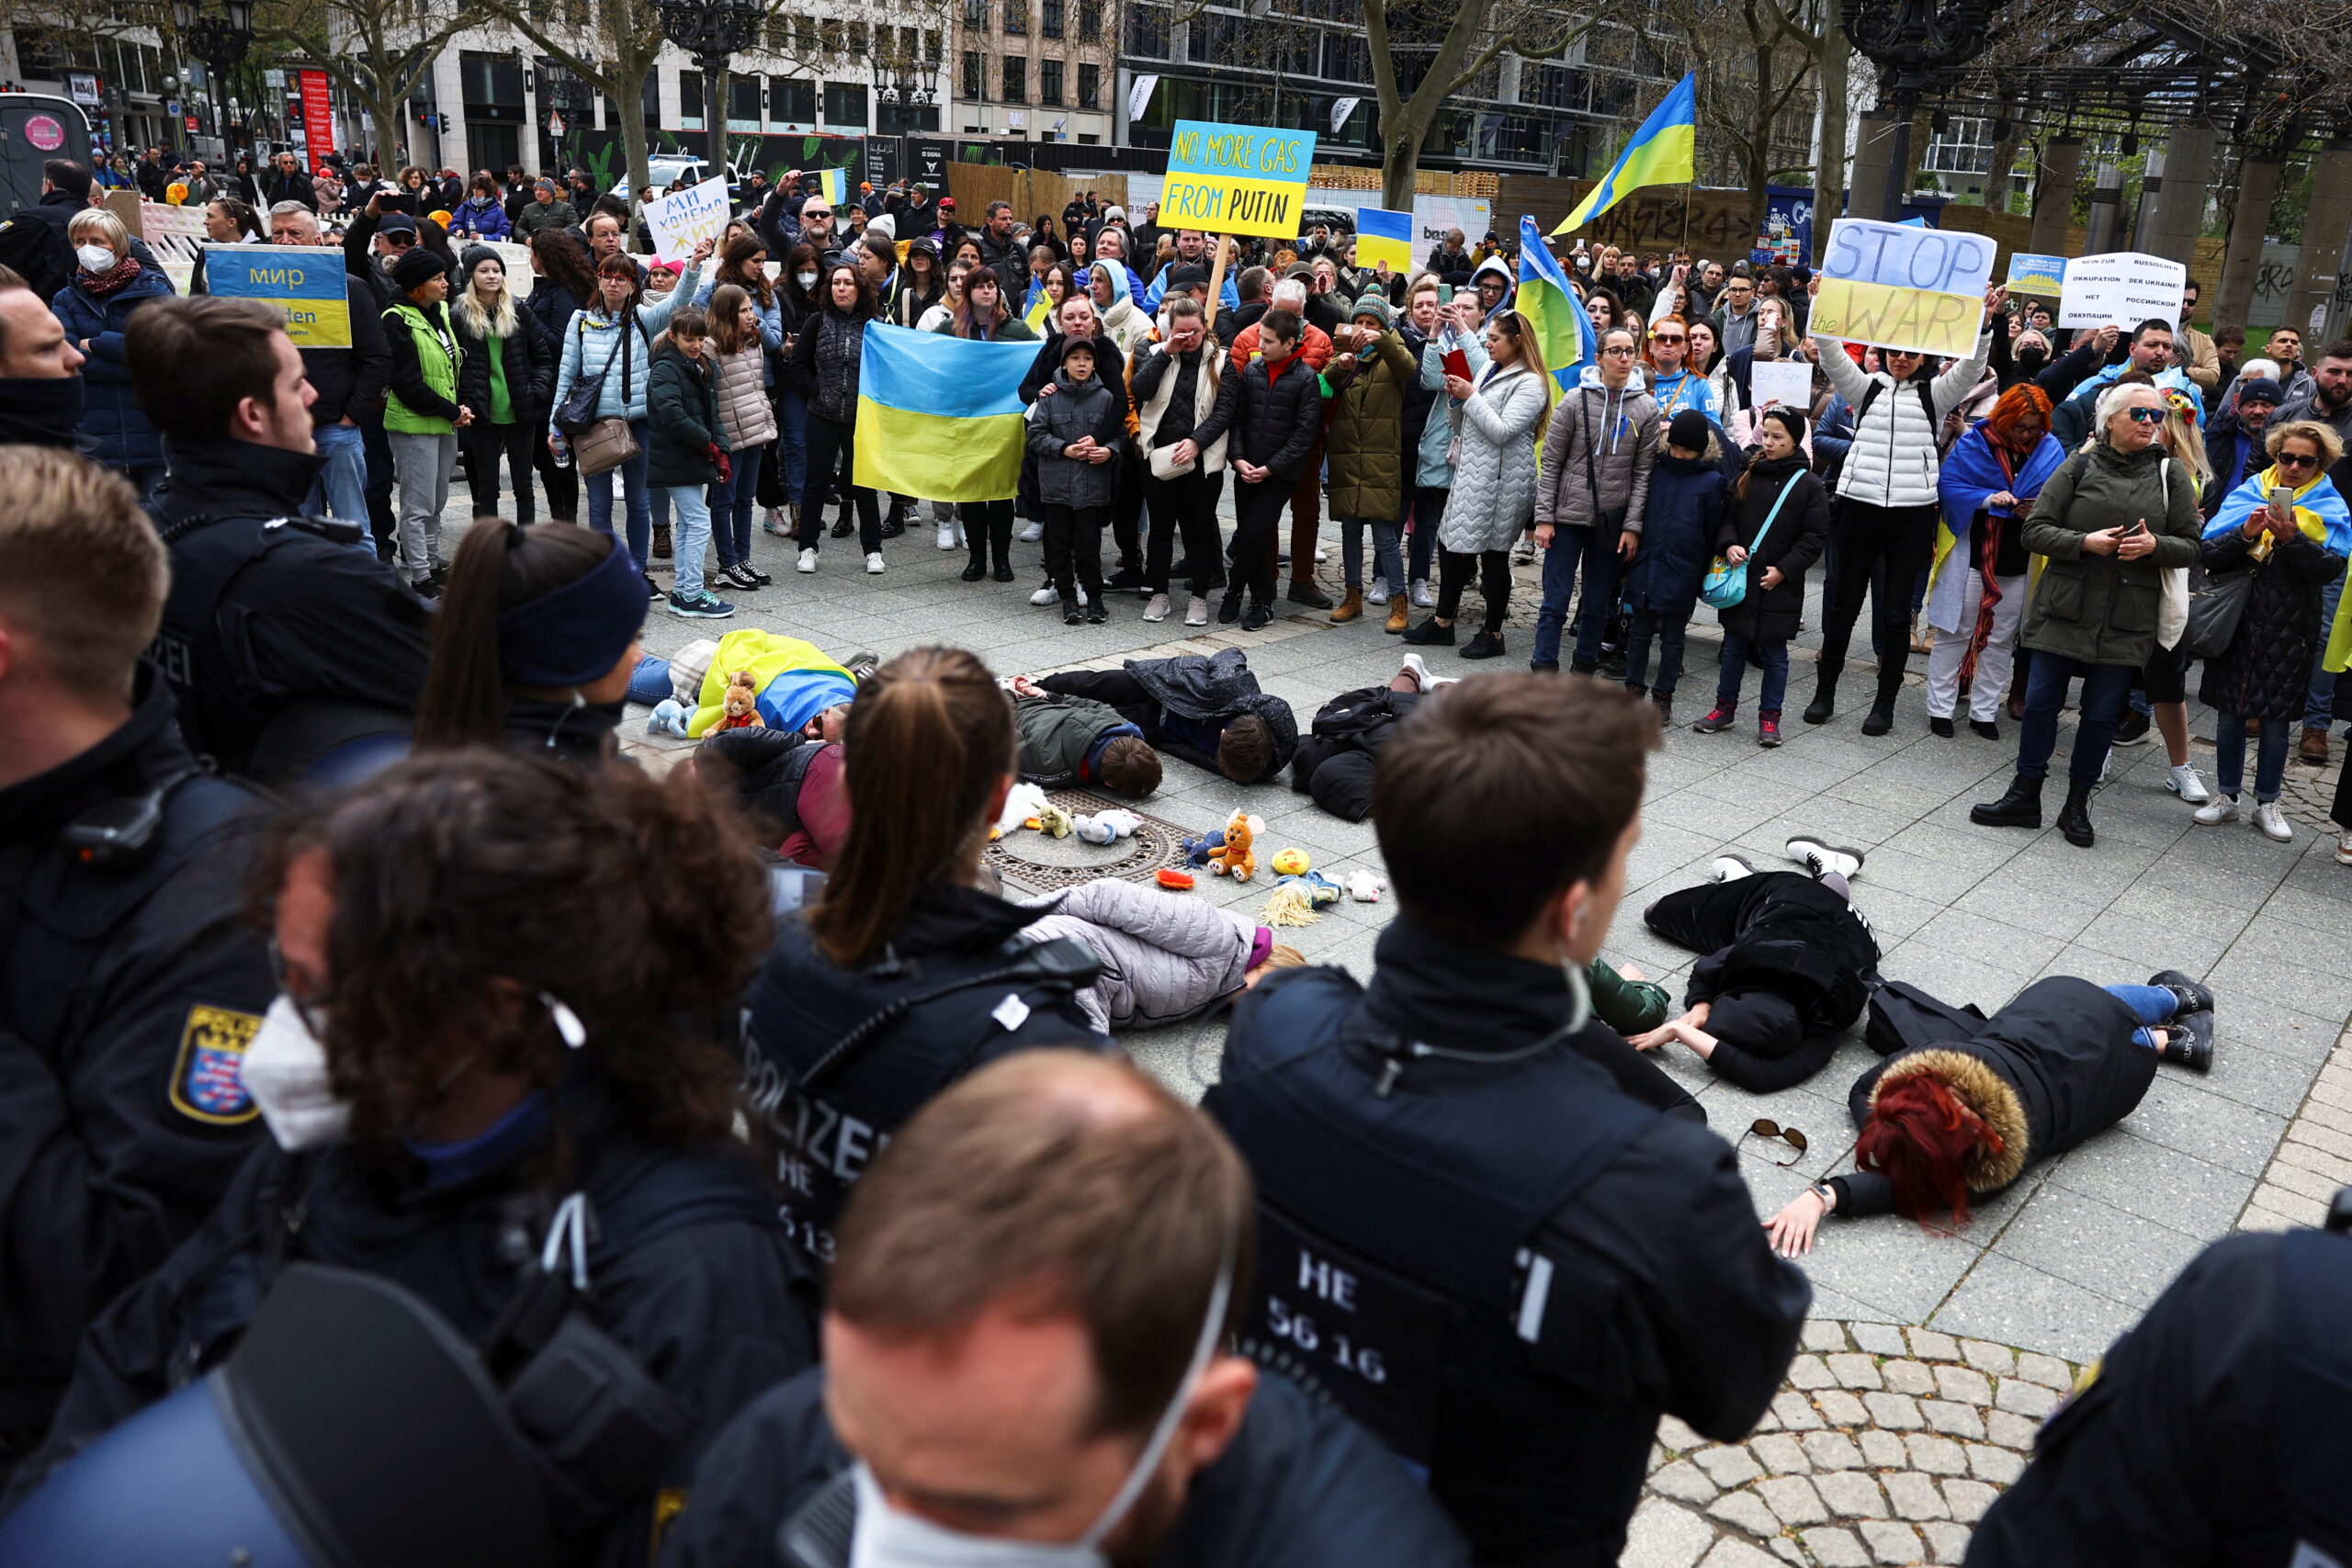  Полицейские охраняют сторонников Украины, когда они выступают против пророссийской демонстрации во Франкфурте. 10 апреля 2022 года. Фото REUTERS/Kai Pfaffenbach/Scanpix/LETA  